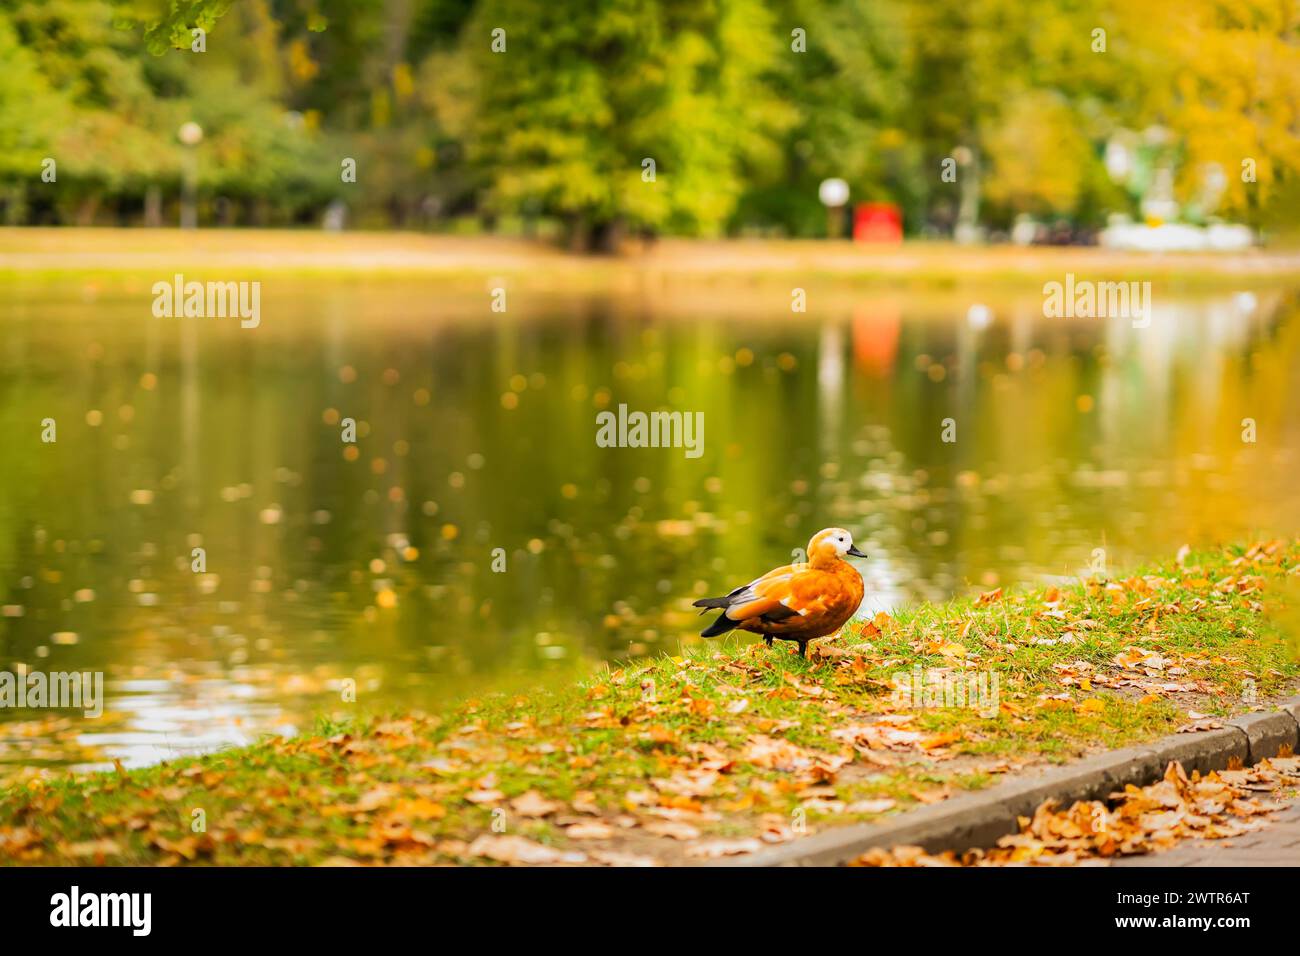 Ente steht auf dem Gras in der Nähe eines Teichs. Herbst, Laubfall-Konzept Stockfoto